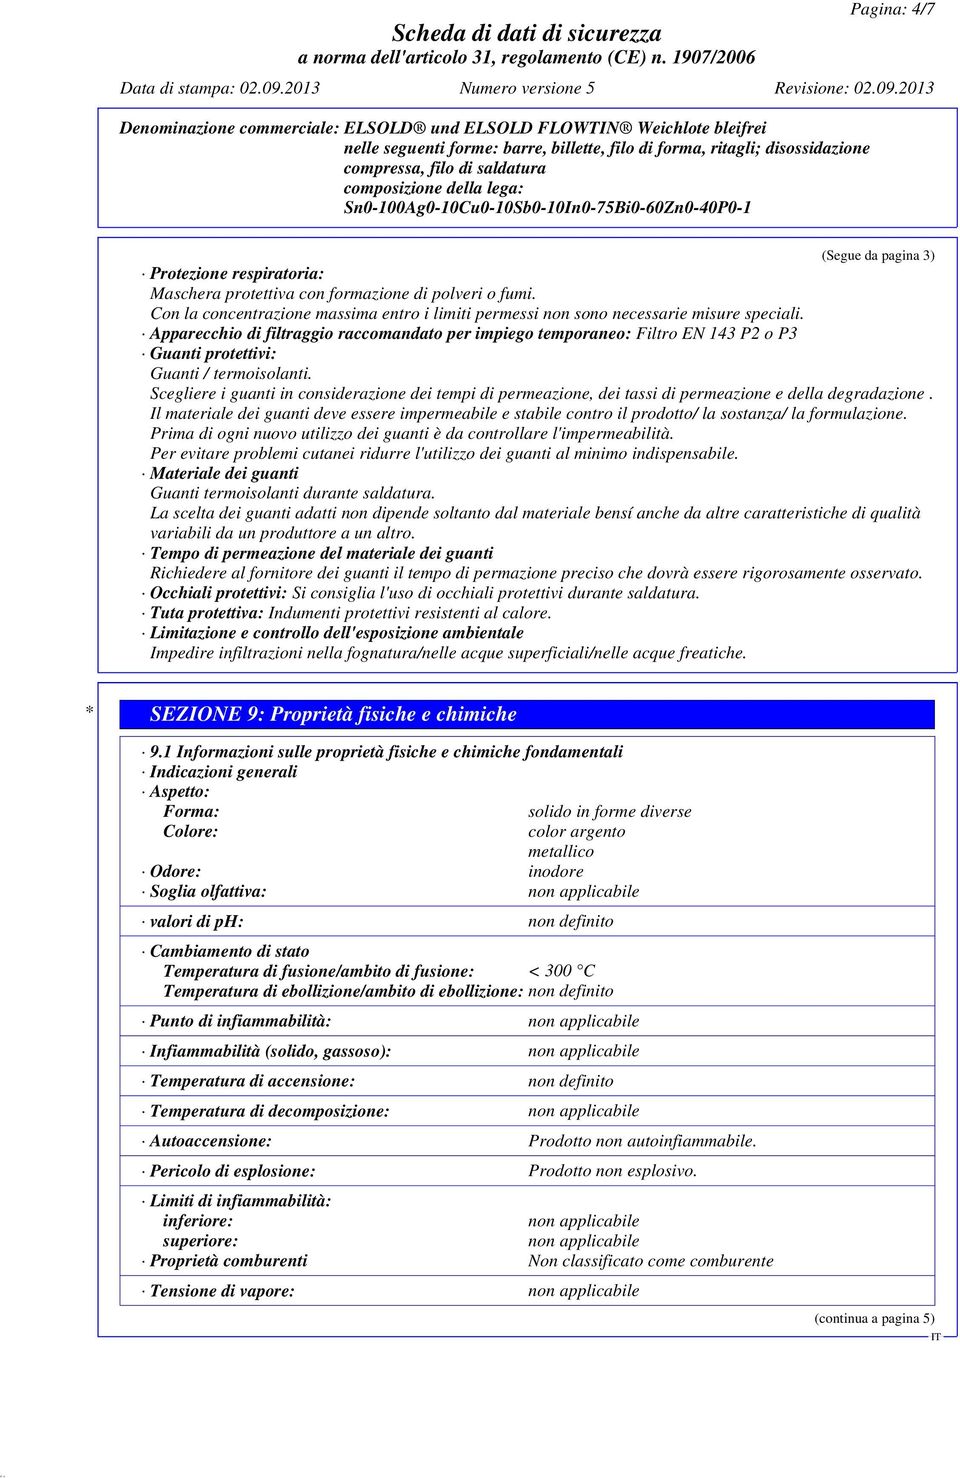 Apparecchio di filtraggio raccomandato per impiego temporaneo: Filtro EN 143 P2 o P3 Guanti protettivi: Guanti / termoisolanti.